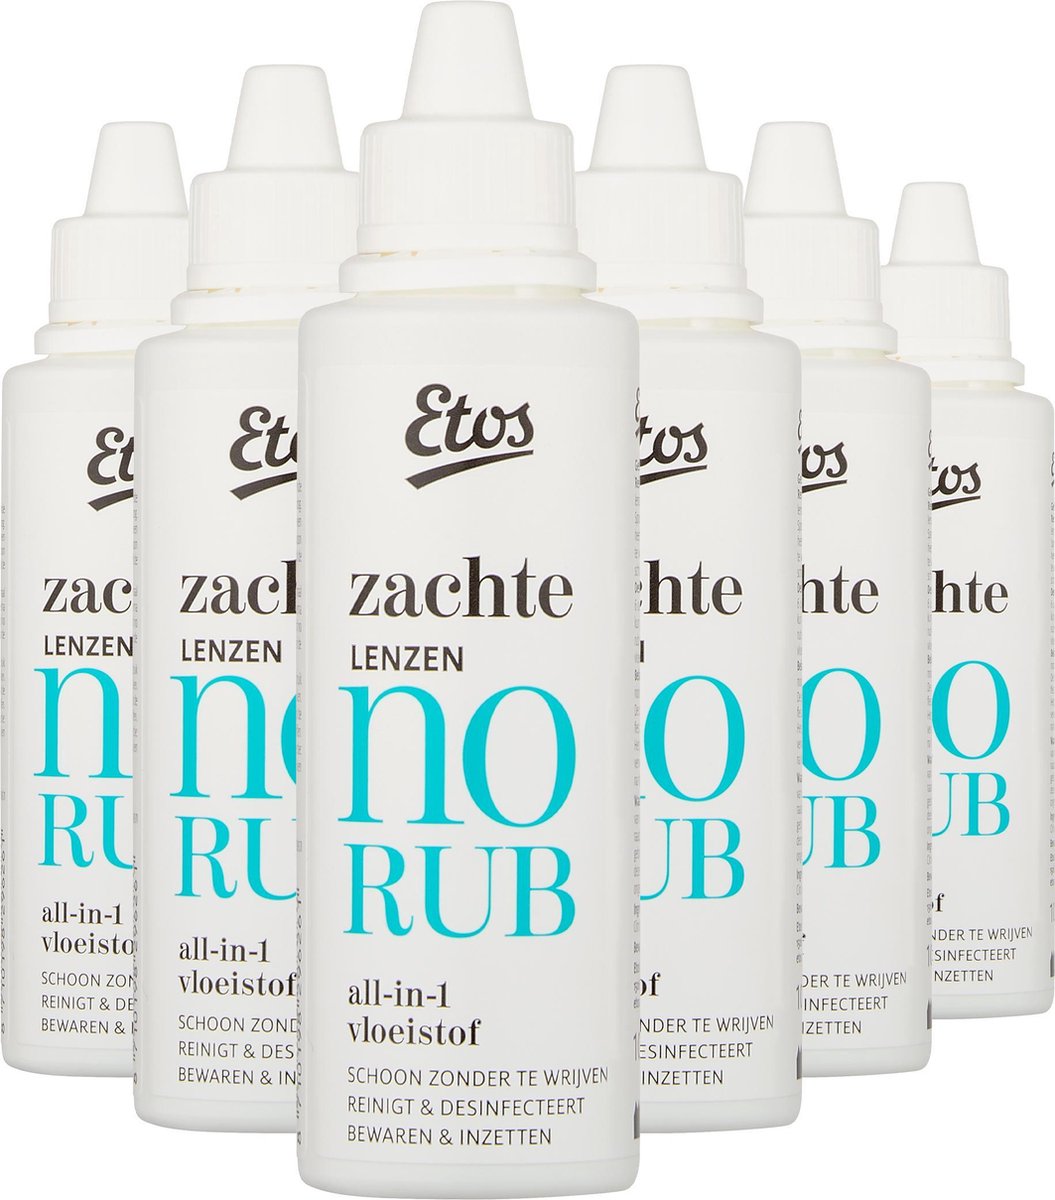 Etos Zachte Lenzen No Rub All-in-1 Vloeistof - 6 x 100 ml